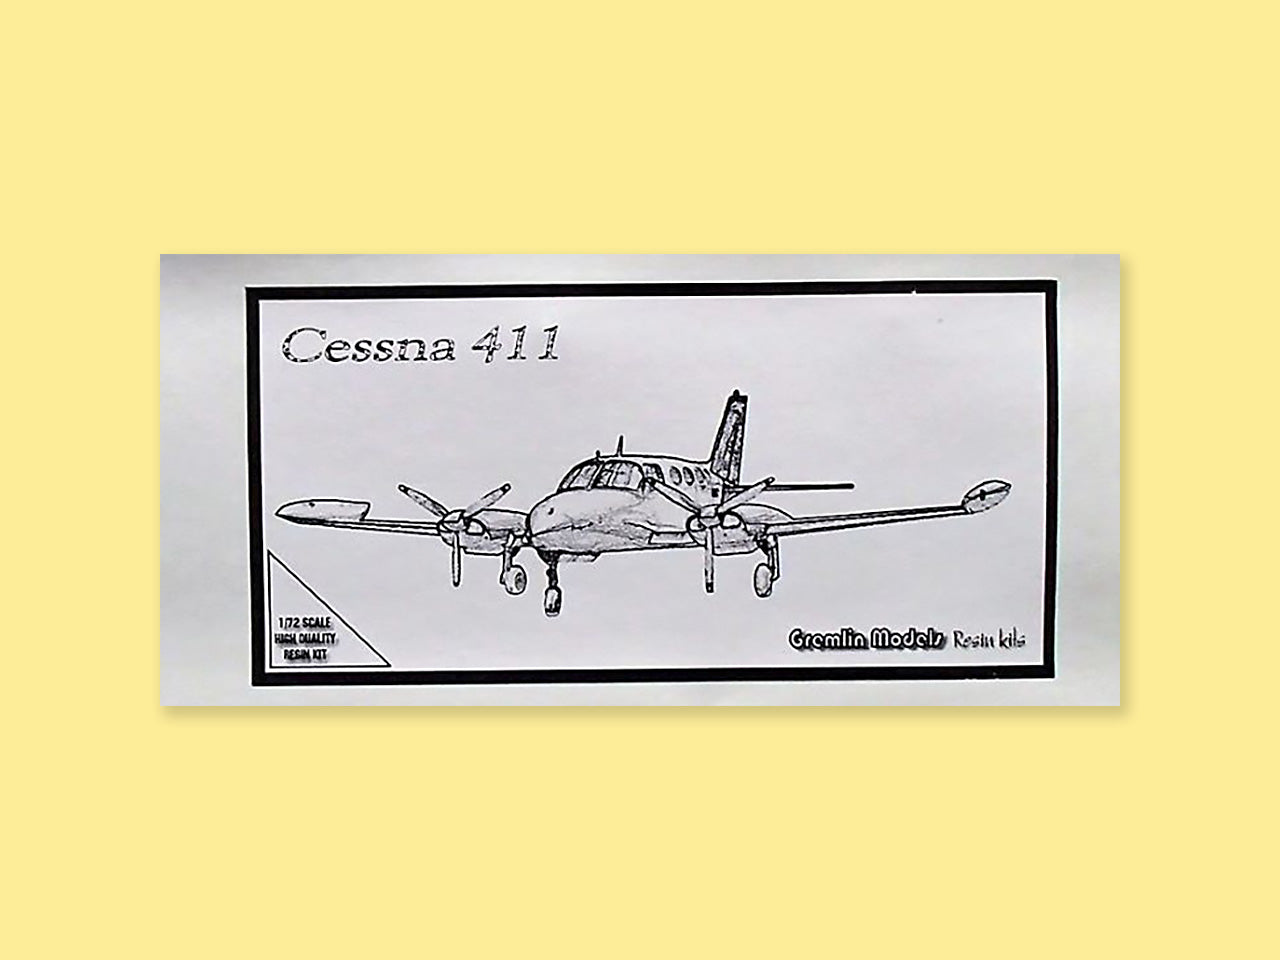 Cessna C-411